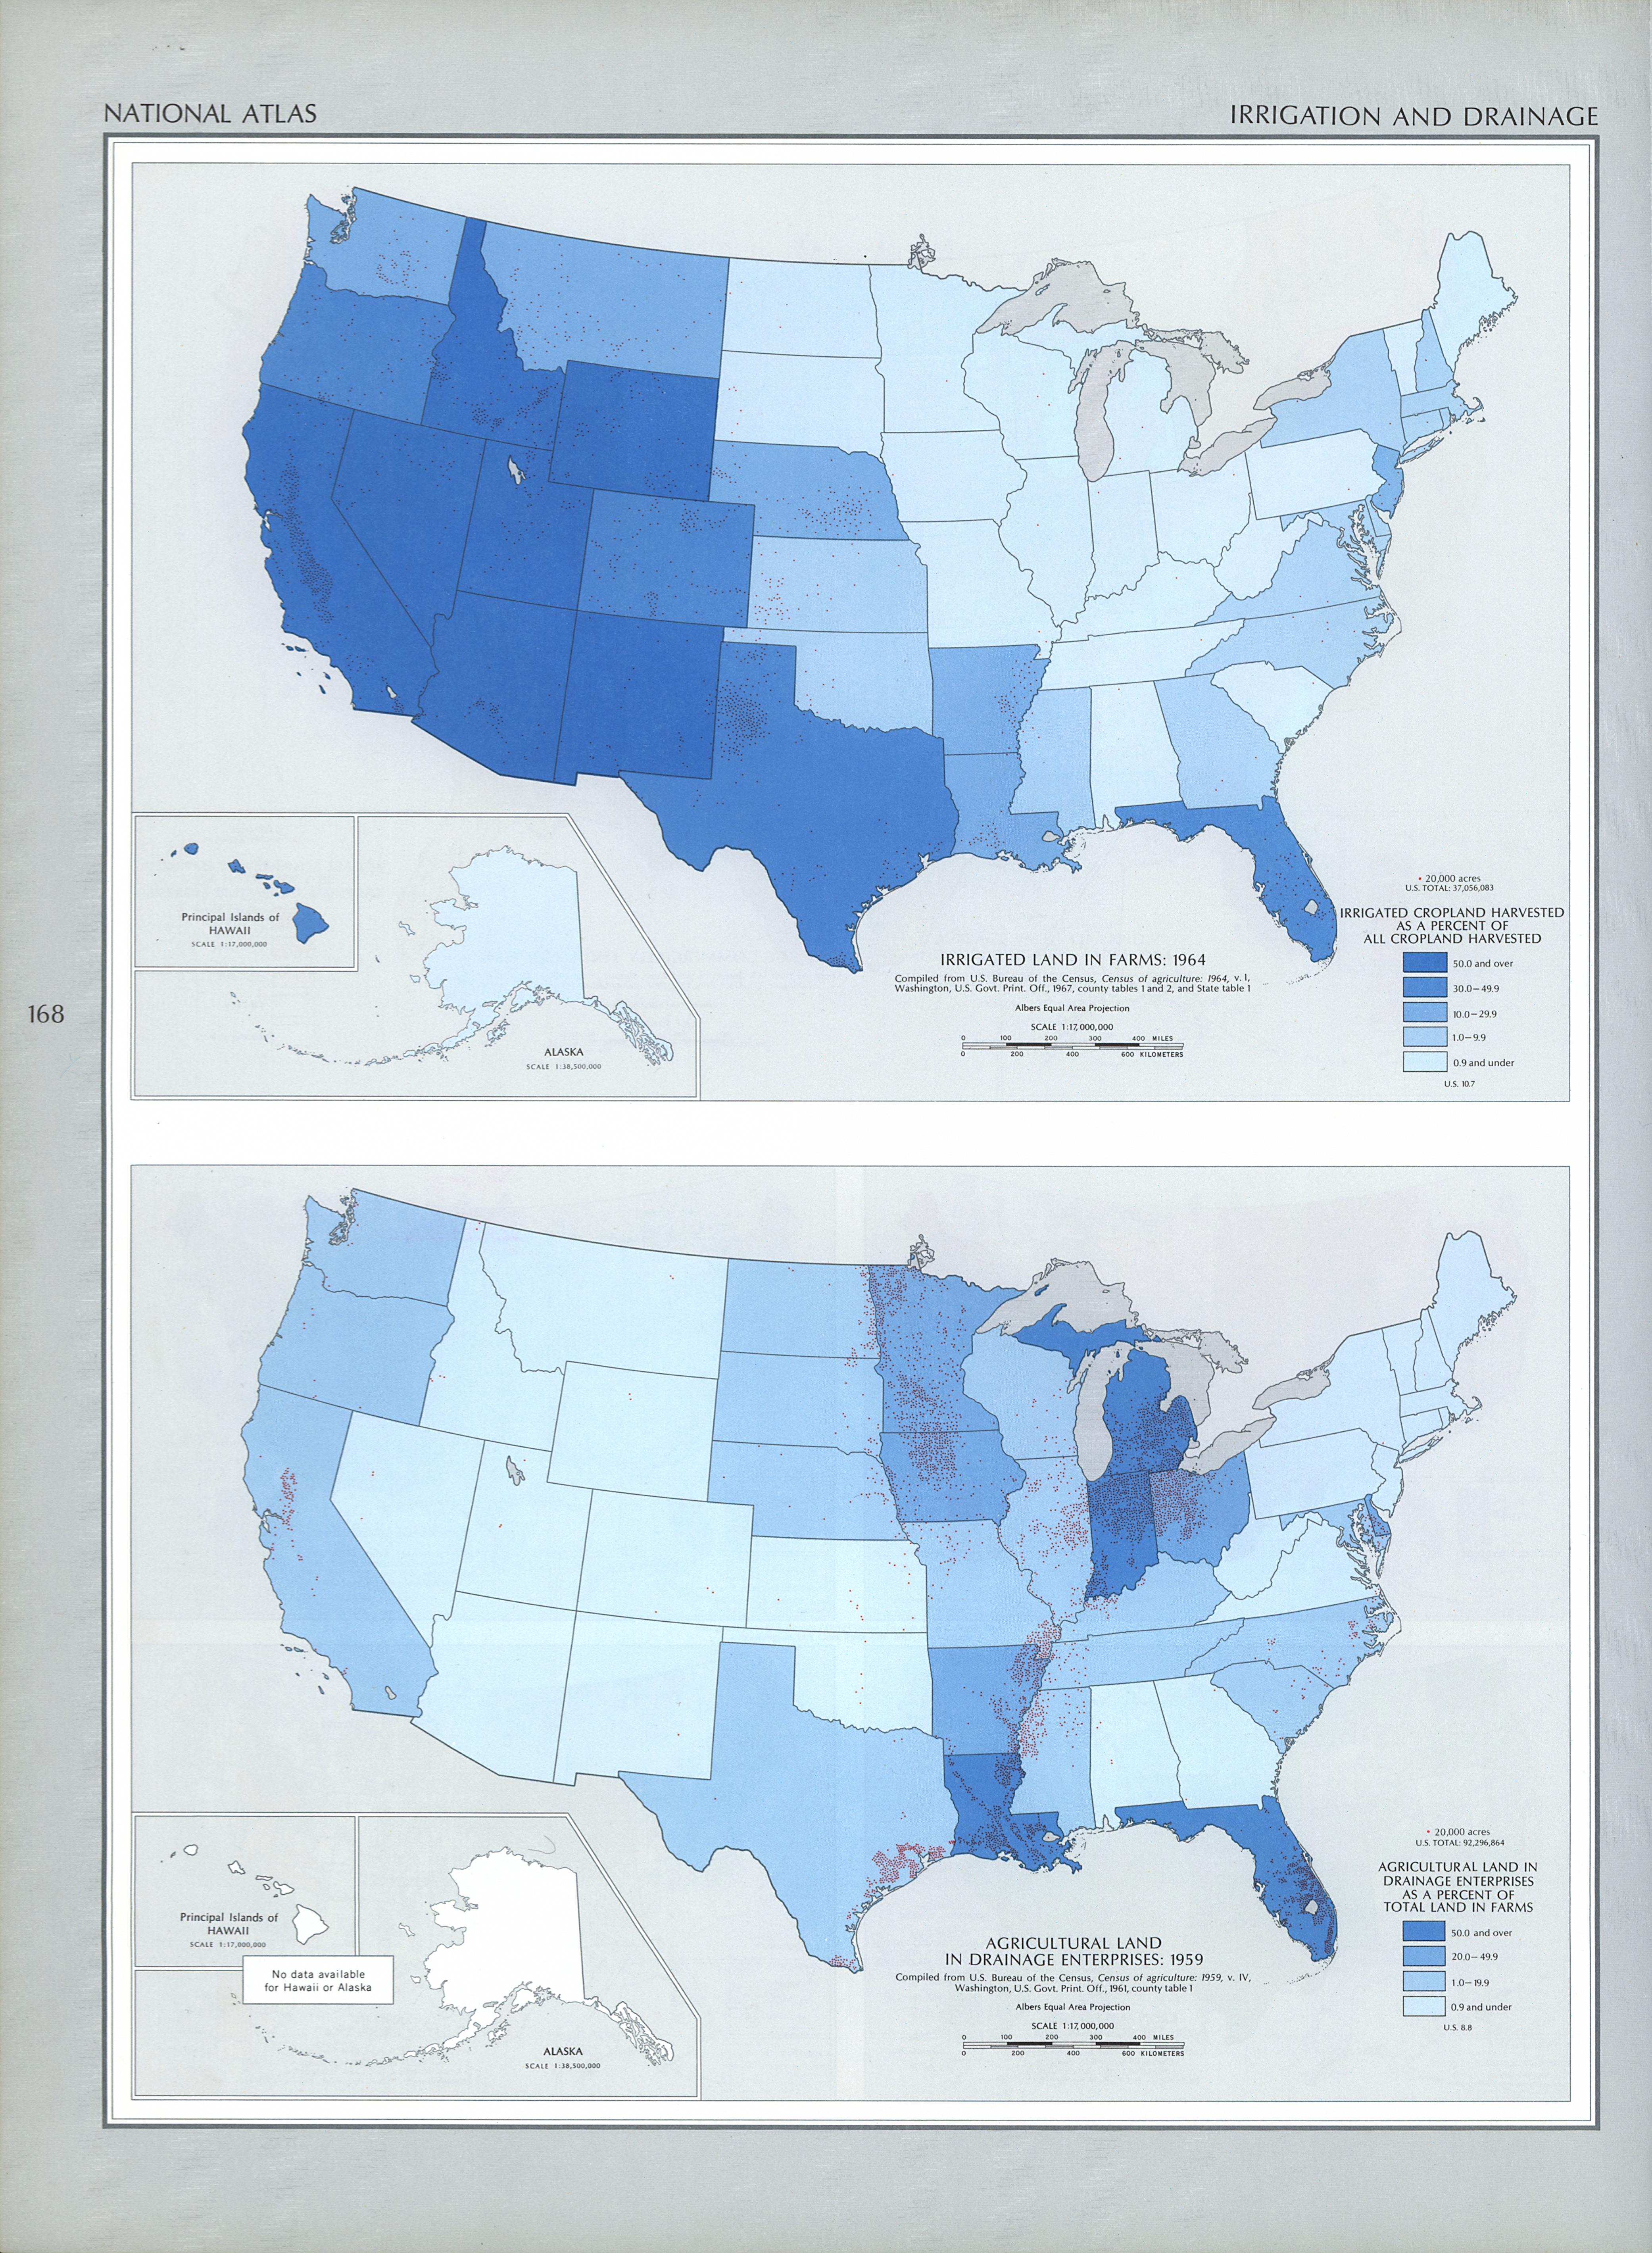 Mapa del Riego y Drenaje de las Propiedades Agrícolas en Estados Unidos